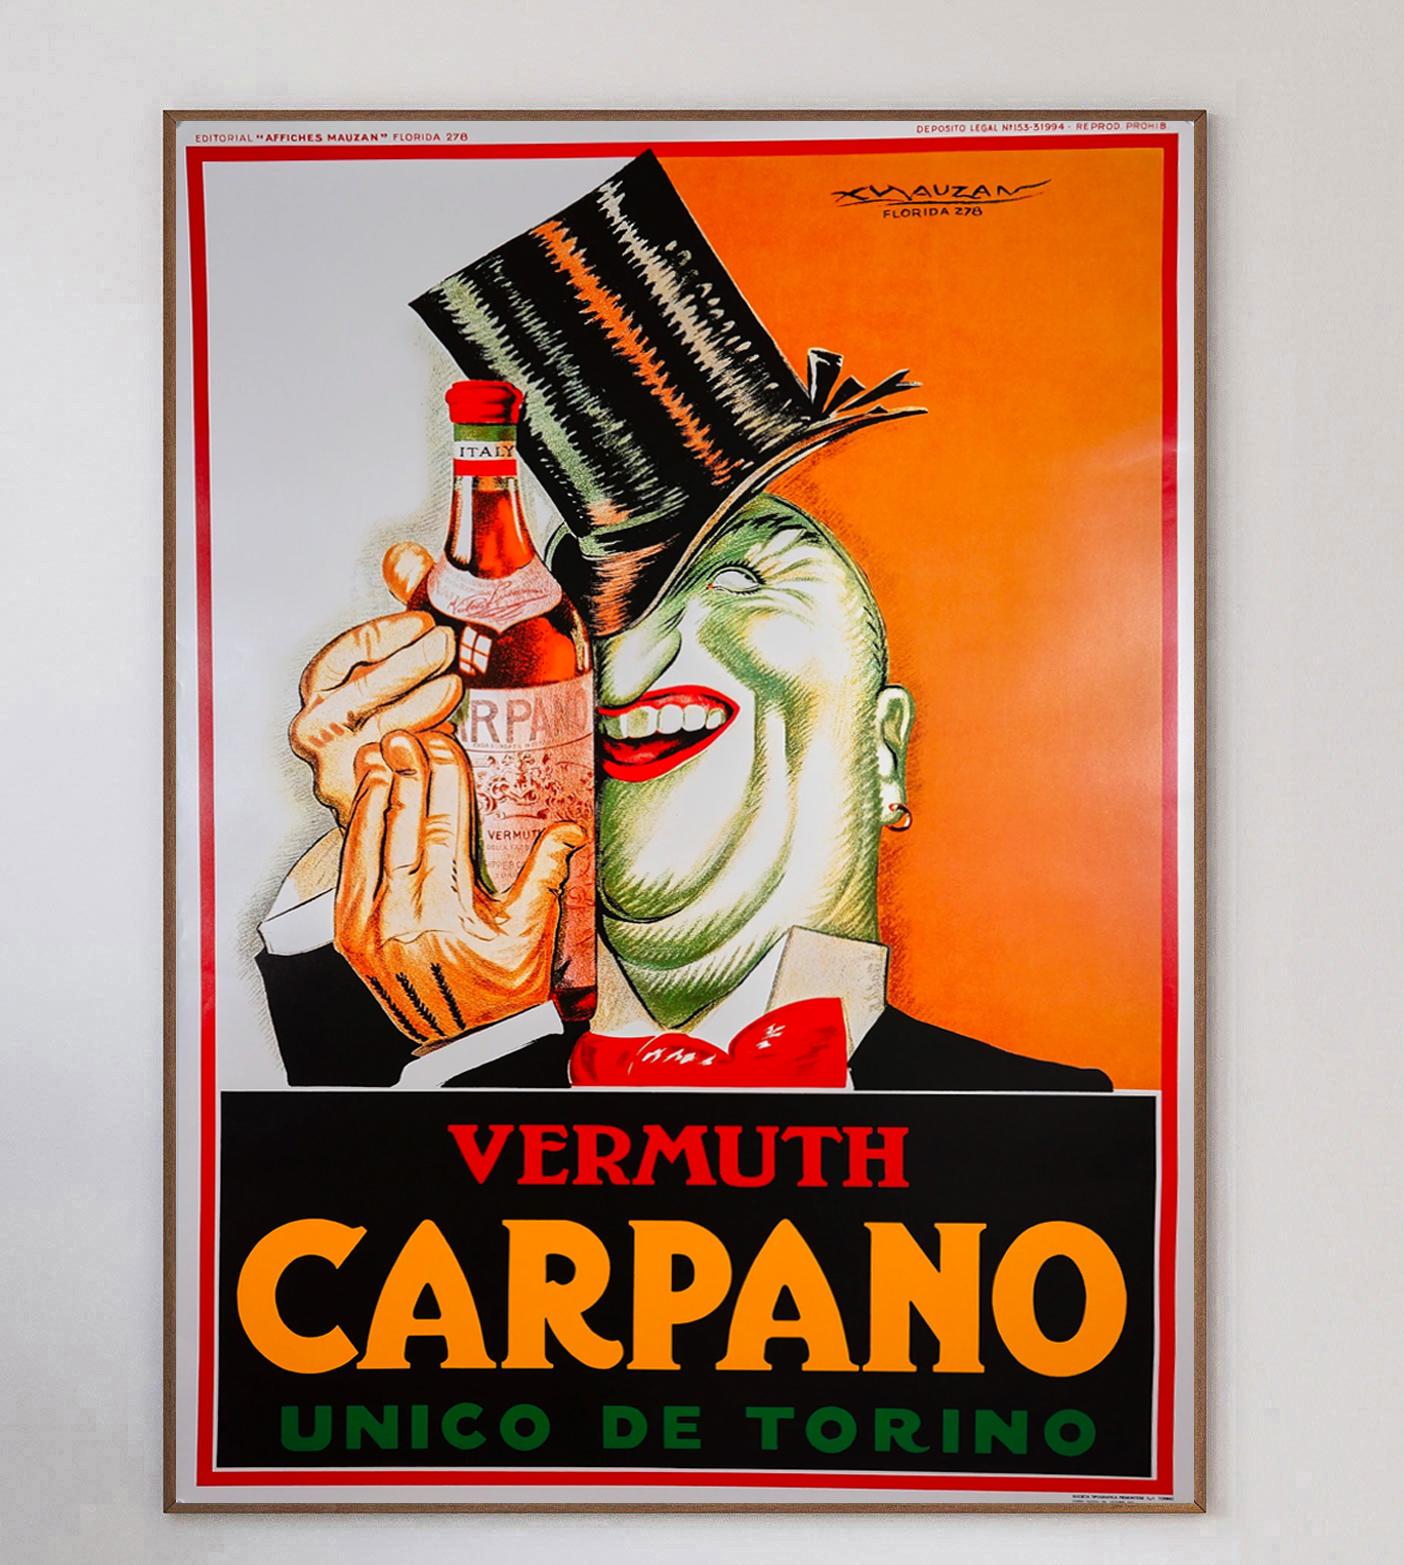 Carpano porte le nom d'Antonio Benedetto Carpano qui, en 1786, a inventé le vermouth moderne à Turin. Ce vermouth Carpano était si populaire que le magasin devait être ouvert 24 heures sur 24 pour répondre à la demande. La marque Carpano est